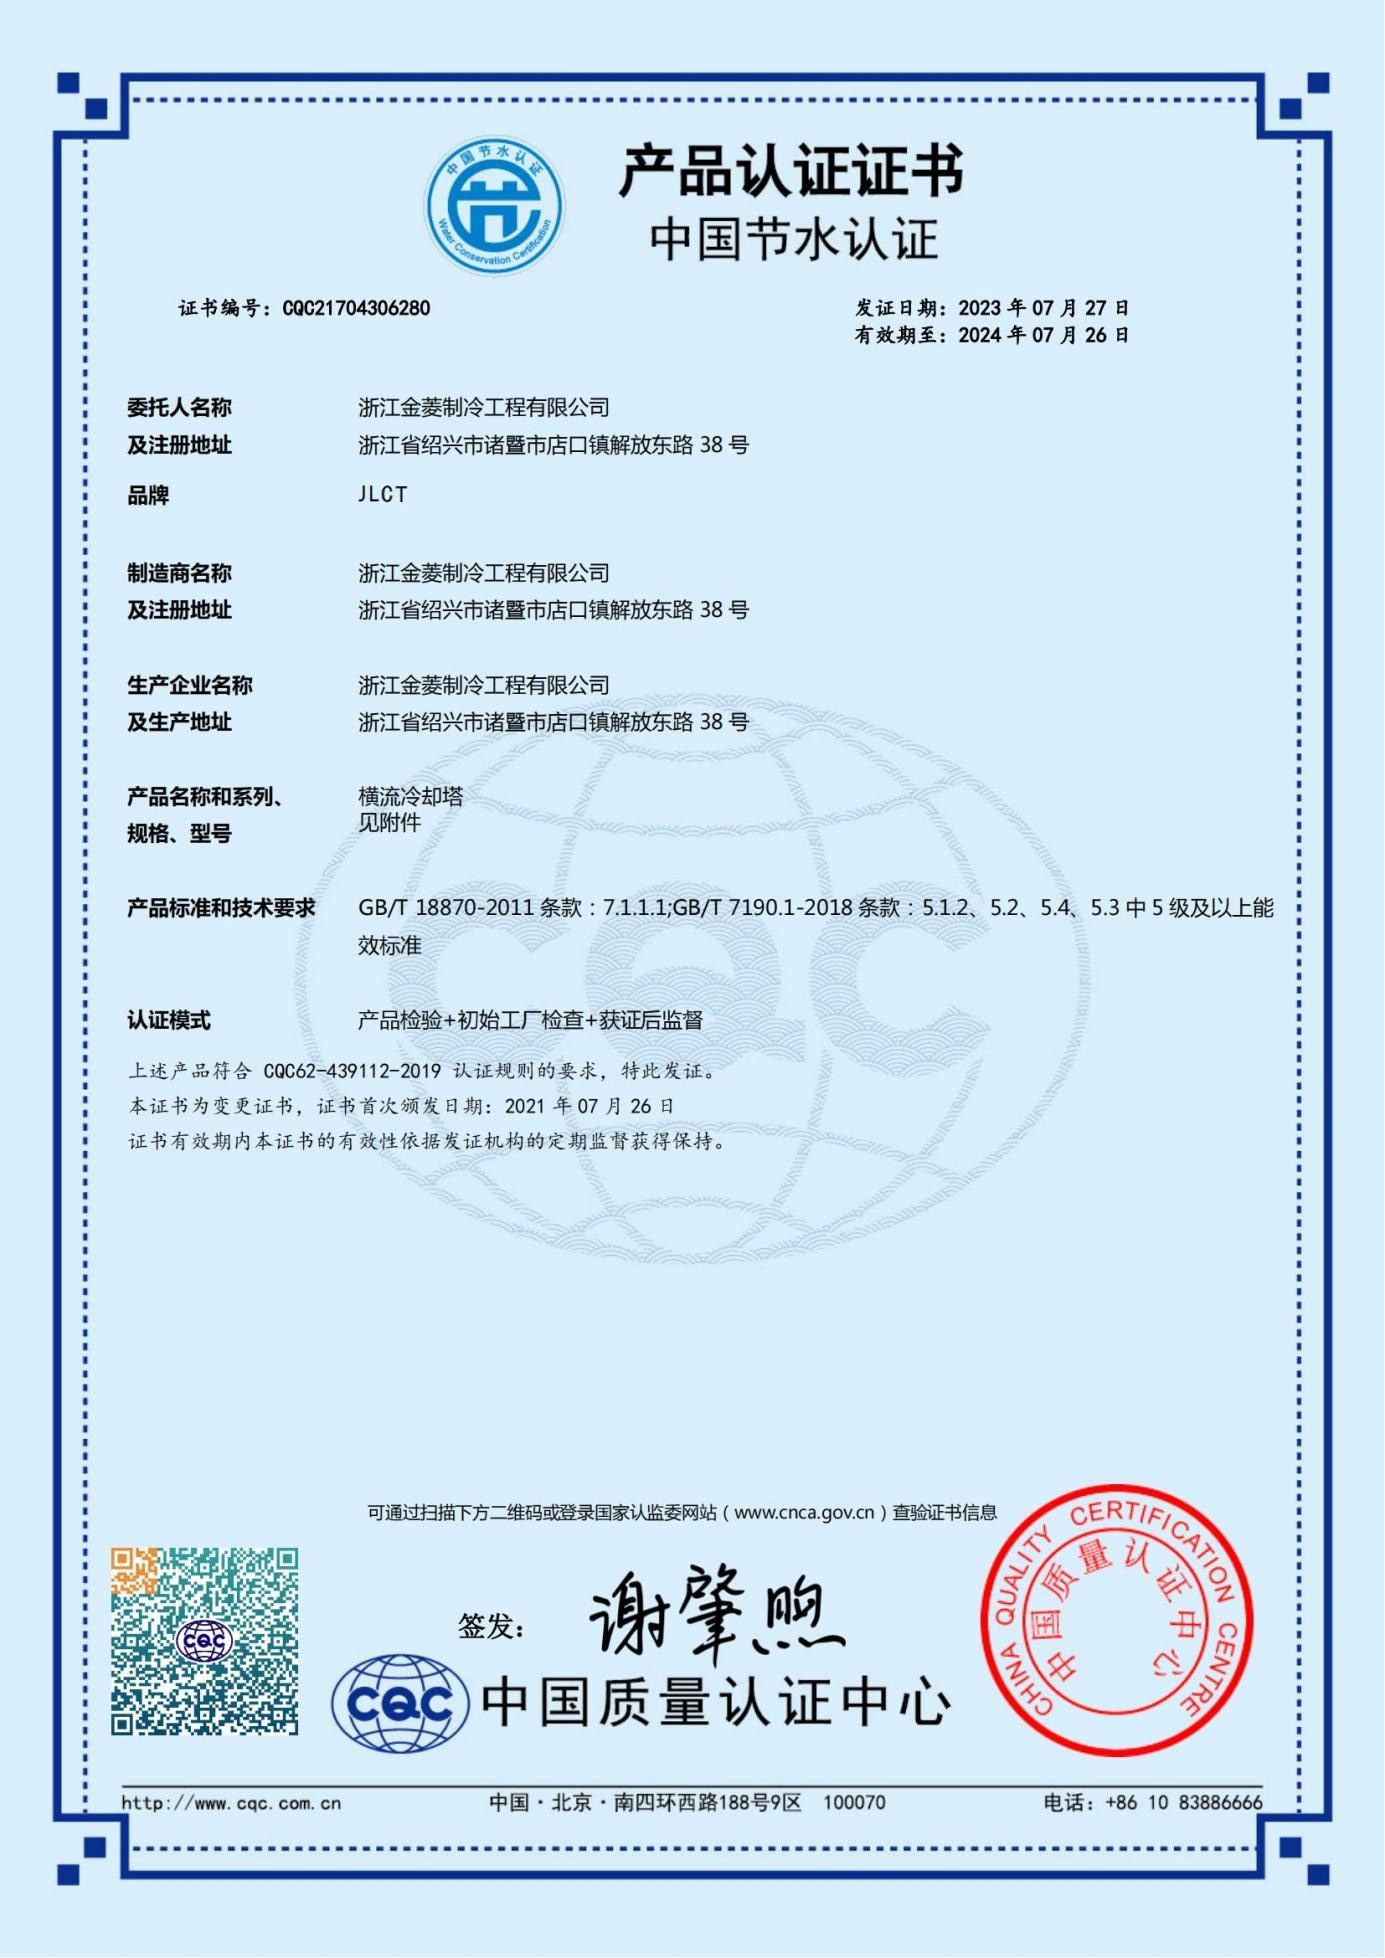 JNT系列节水产品认证证书